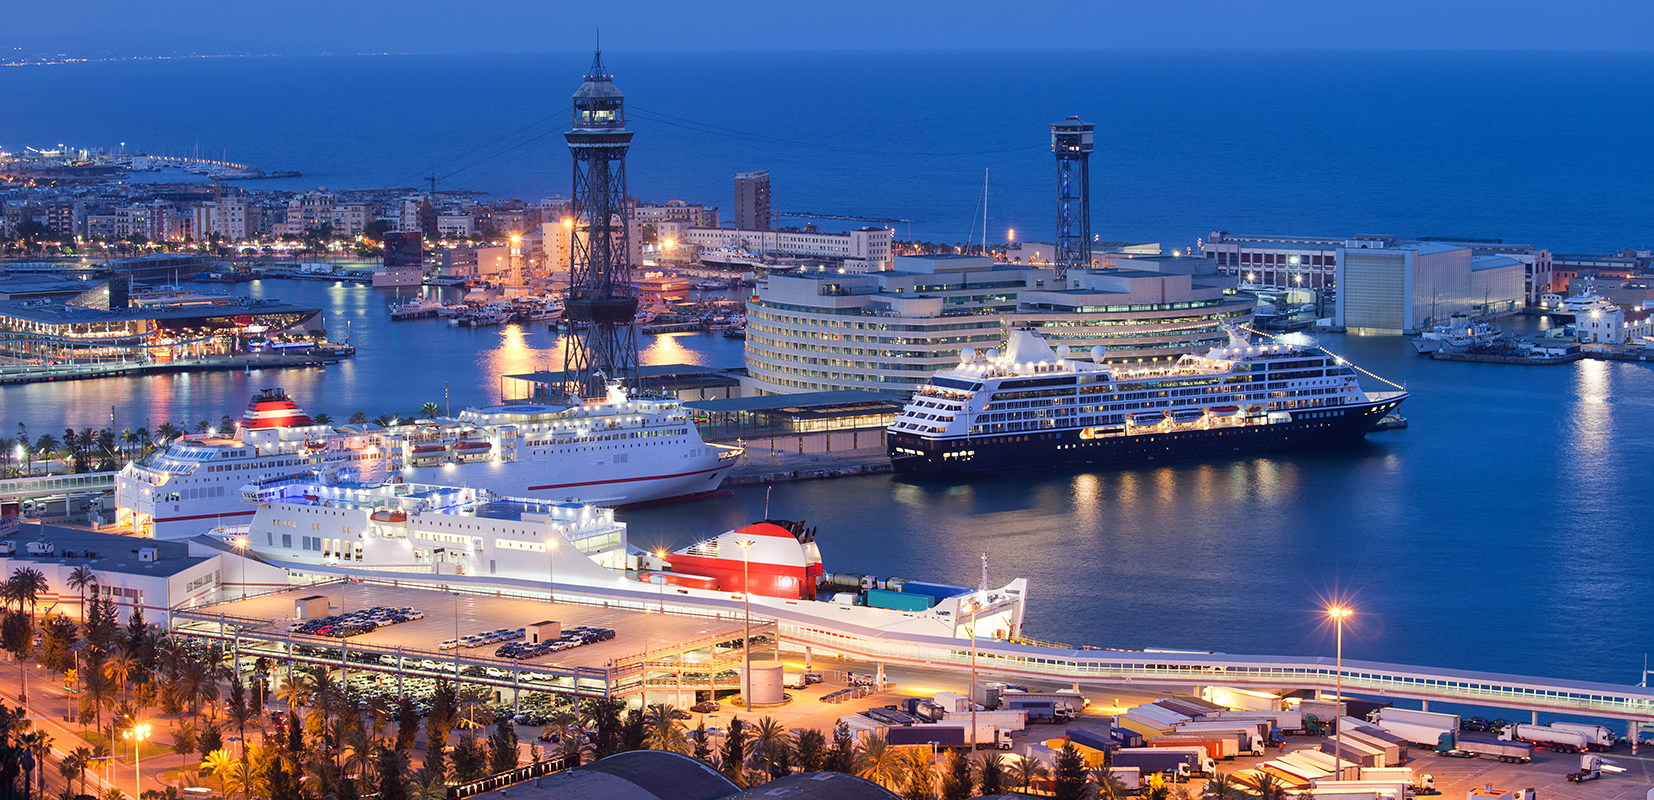 Vista nocturna de crucero en el puerto de Barcelona